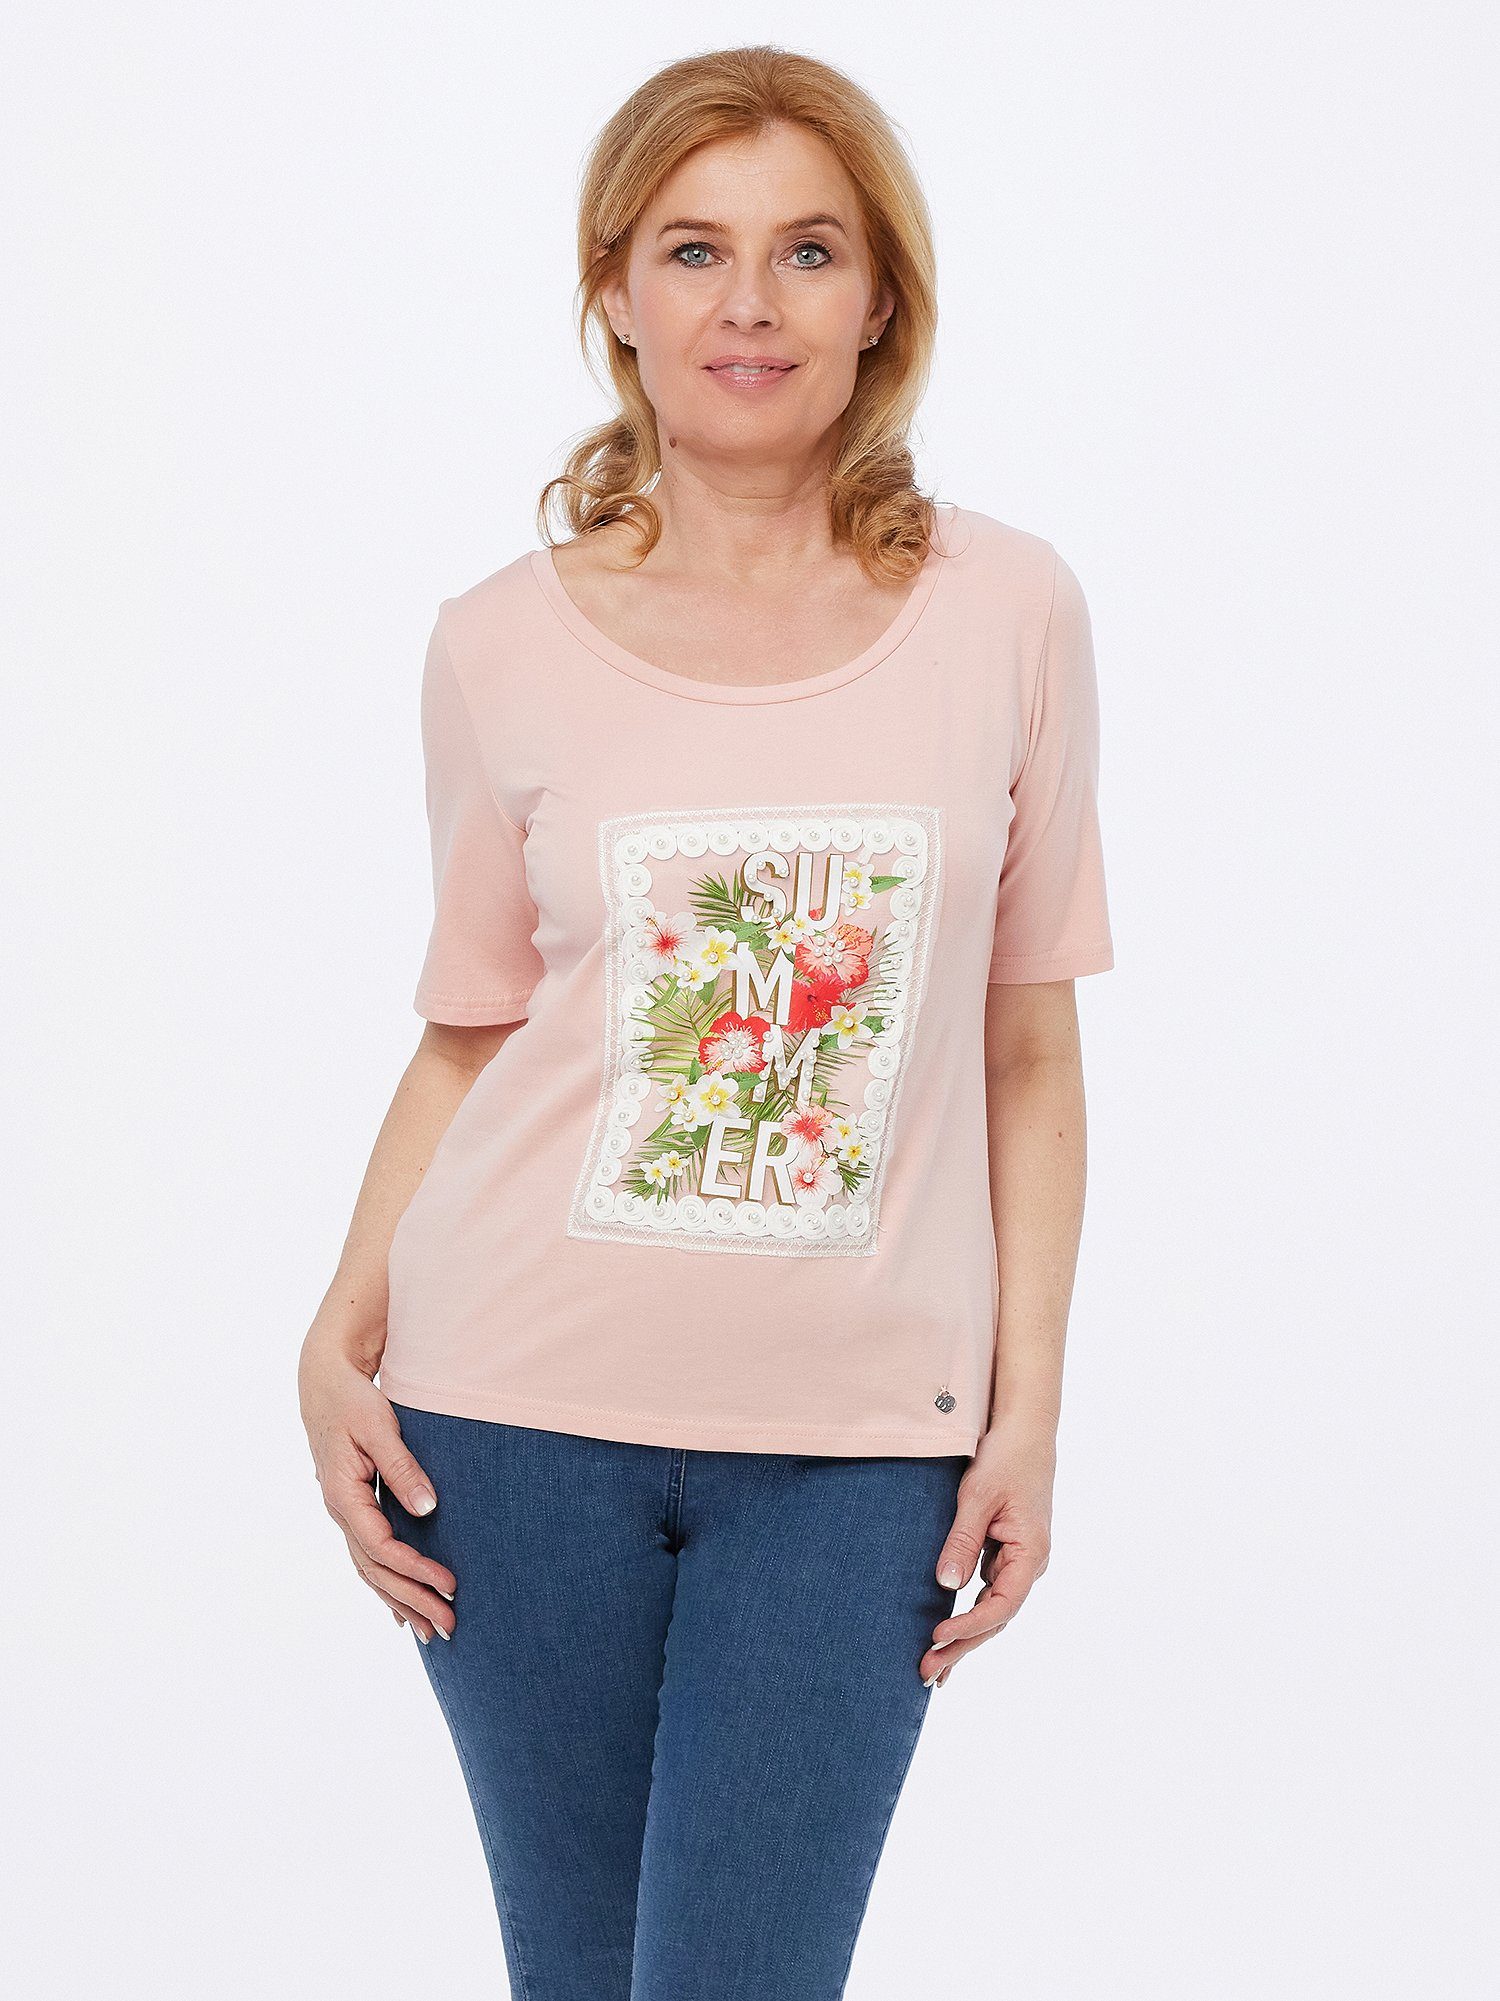 Christian Materne Print-Shirt mit Perlen- und Spitzenapplikation